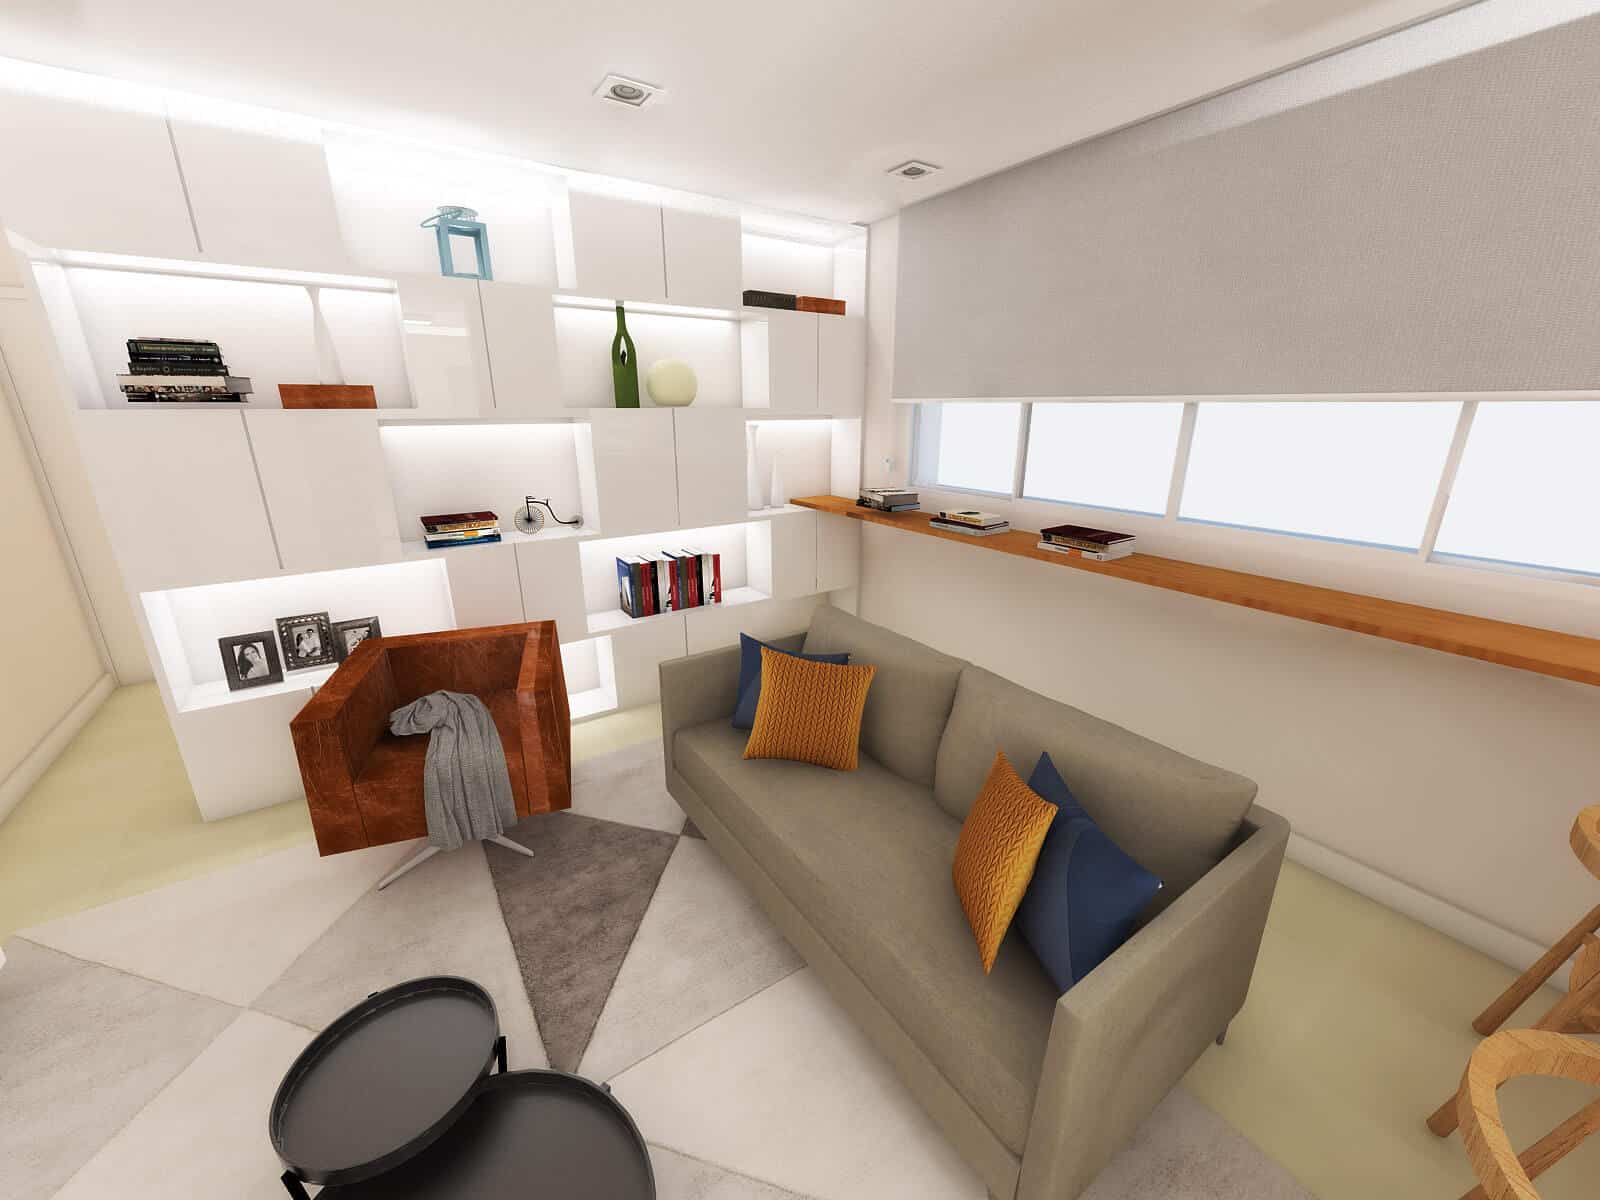 3D da sala do apartamento H&C, refletindo o estilo contemporâneo e elegante do casal